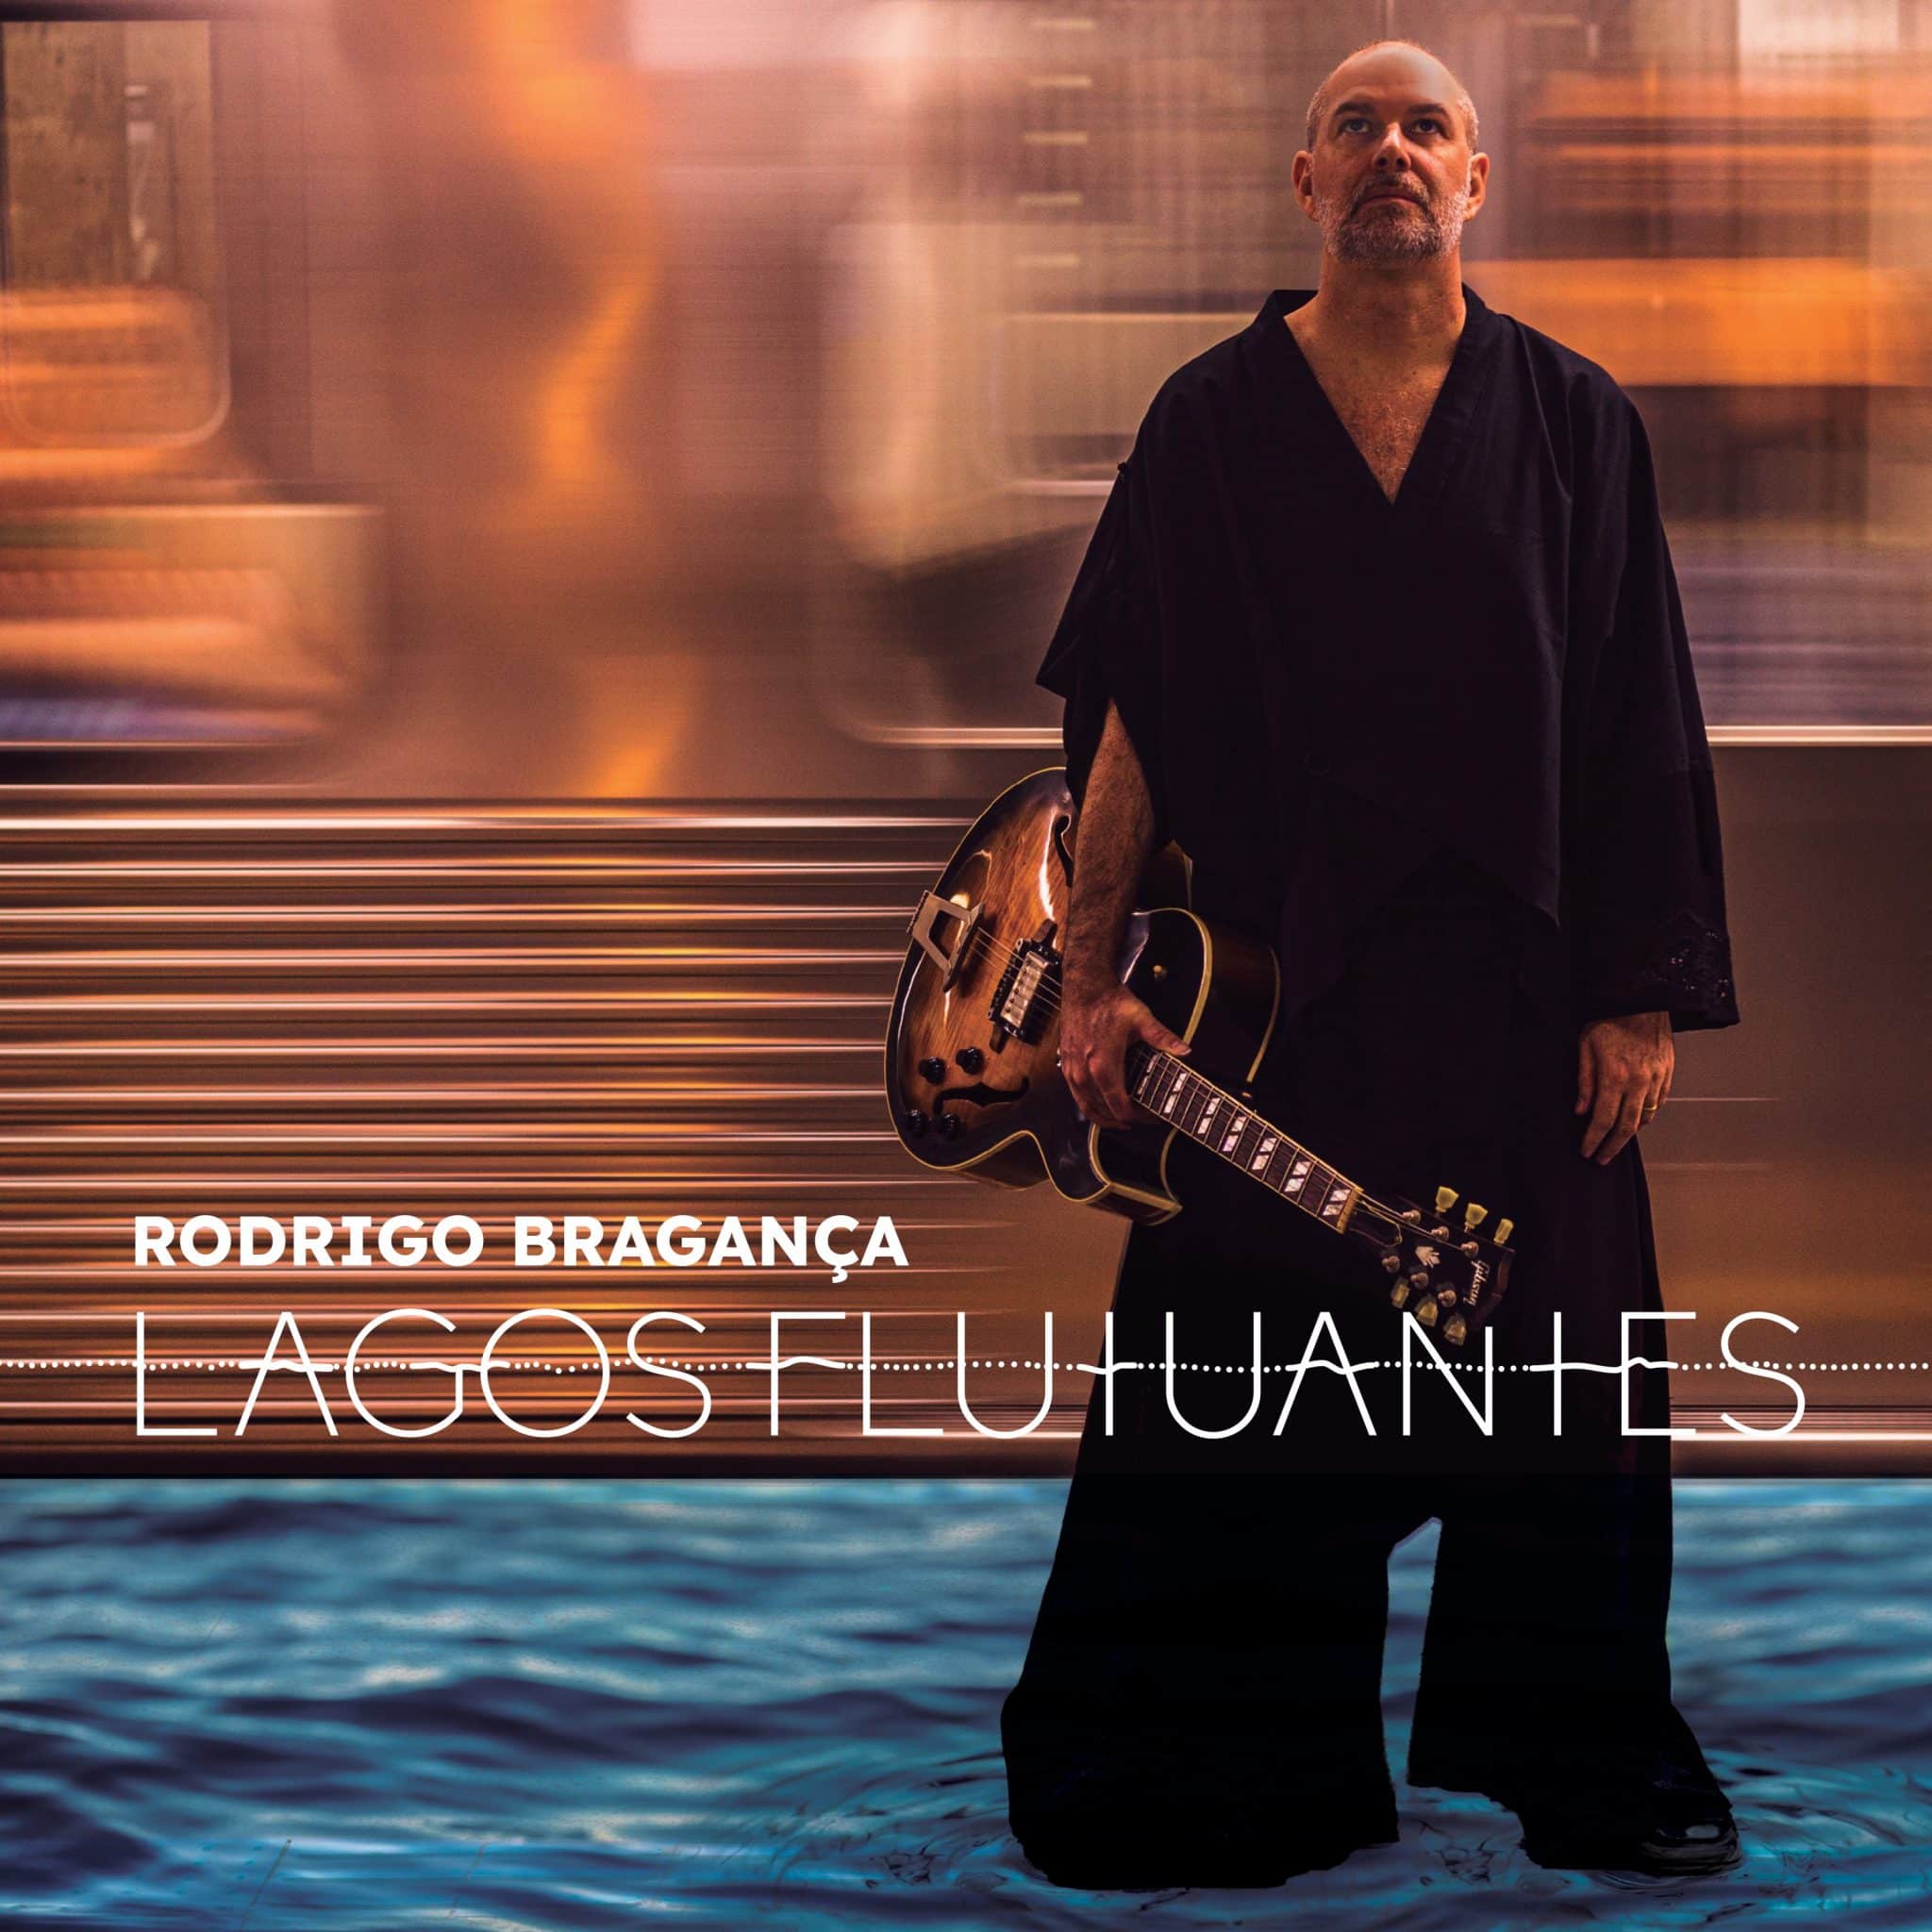 revistaprosaversoearte.com - 'Lagos Flutuantes', álbum do guitarrista e compositor Rodrigo Bragança